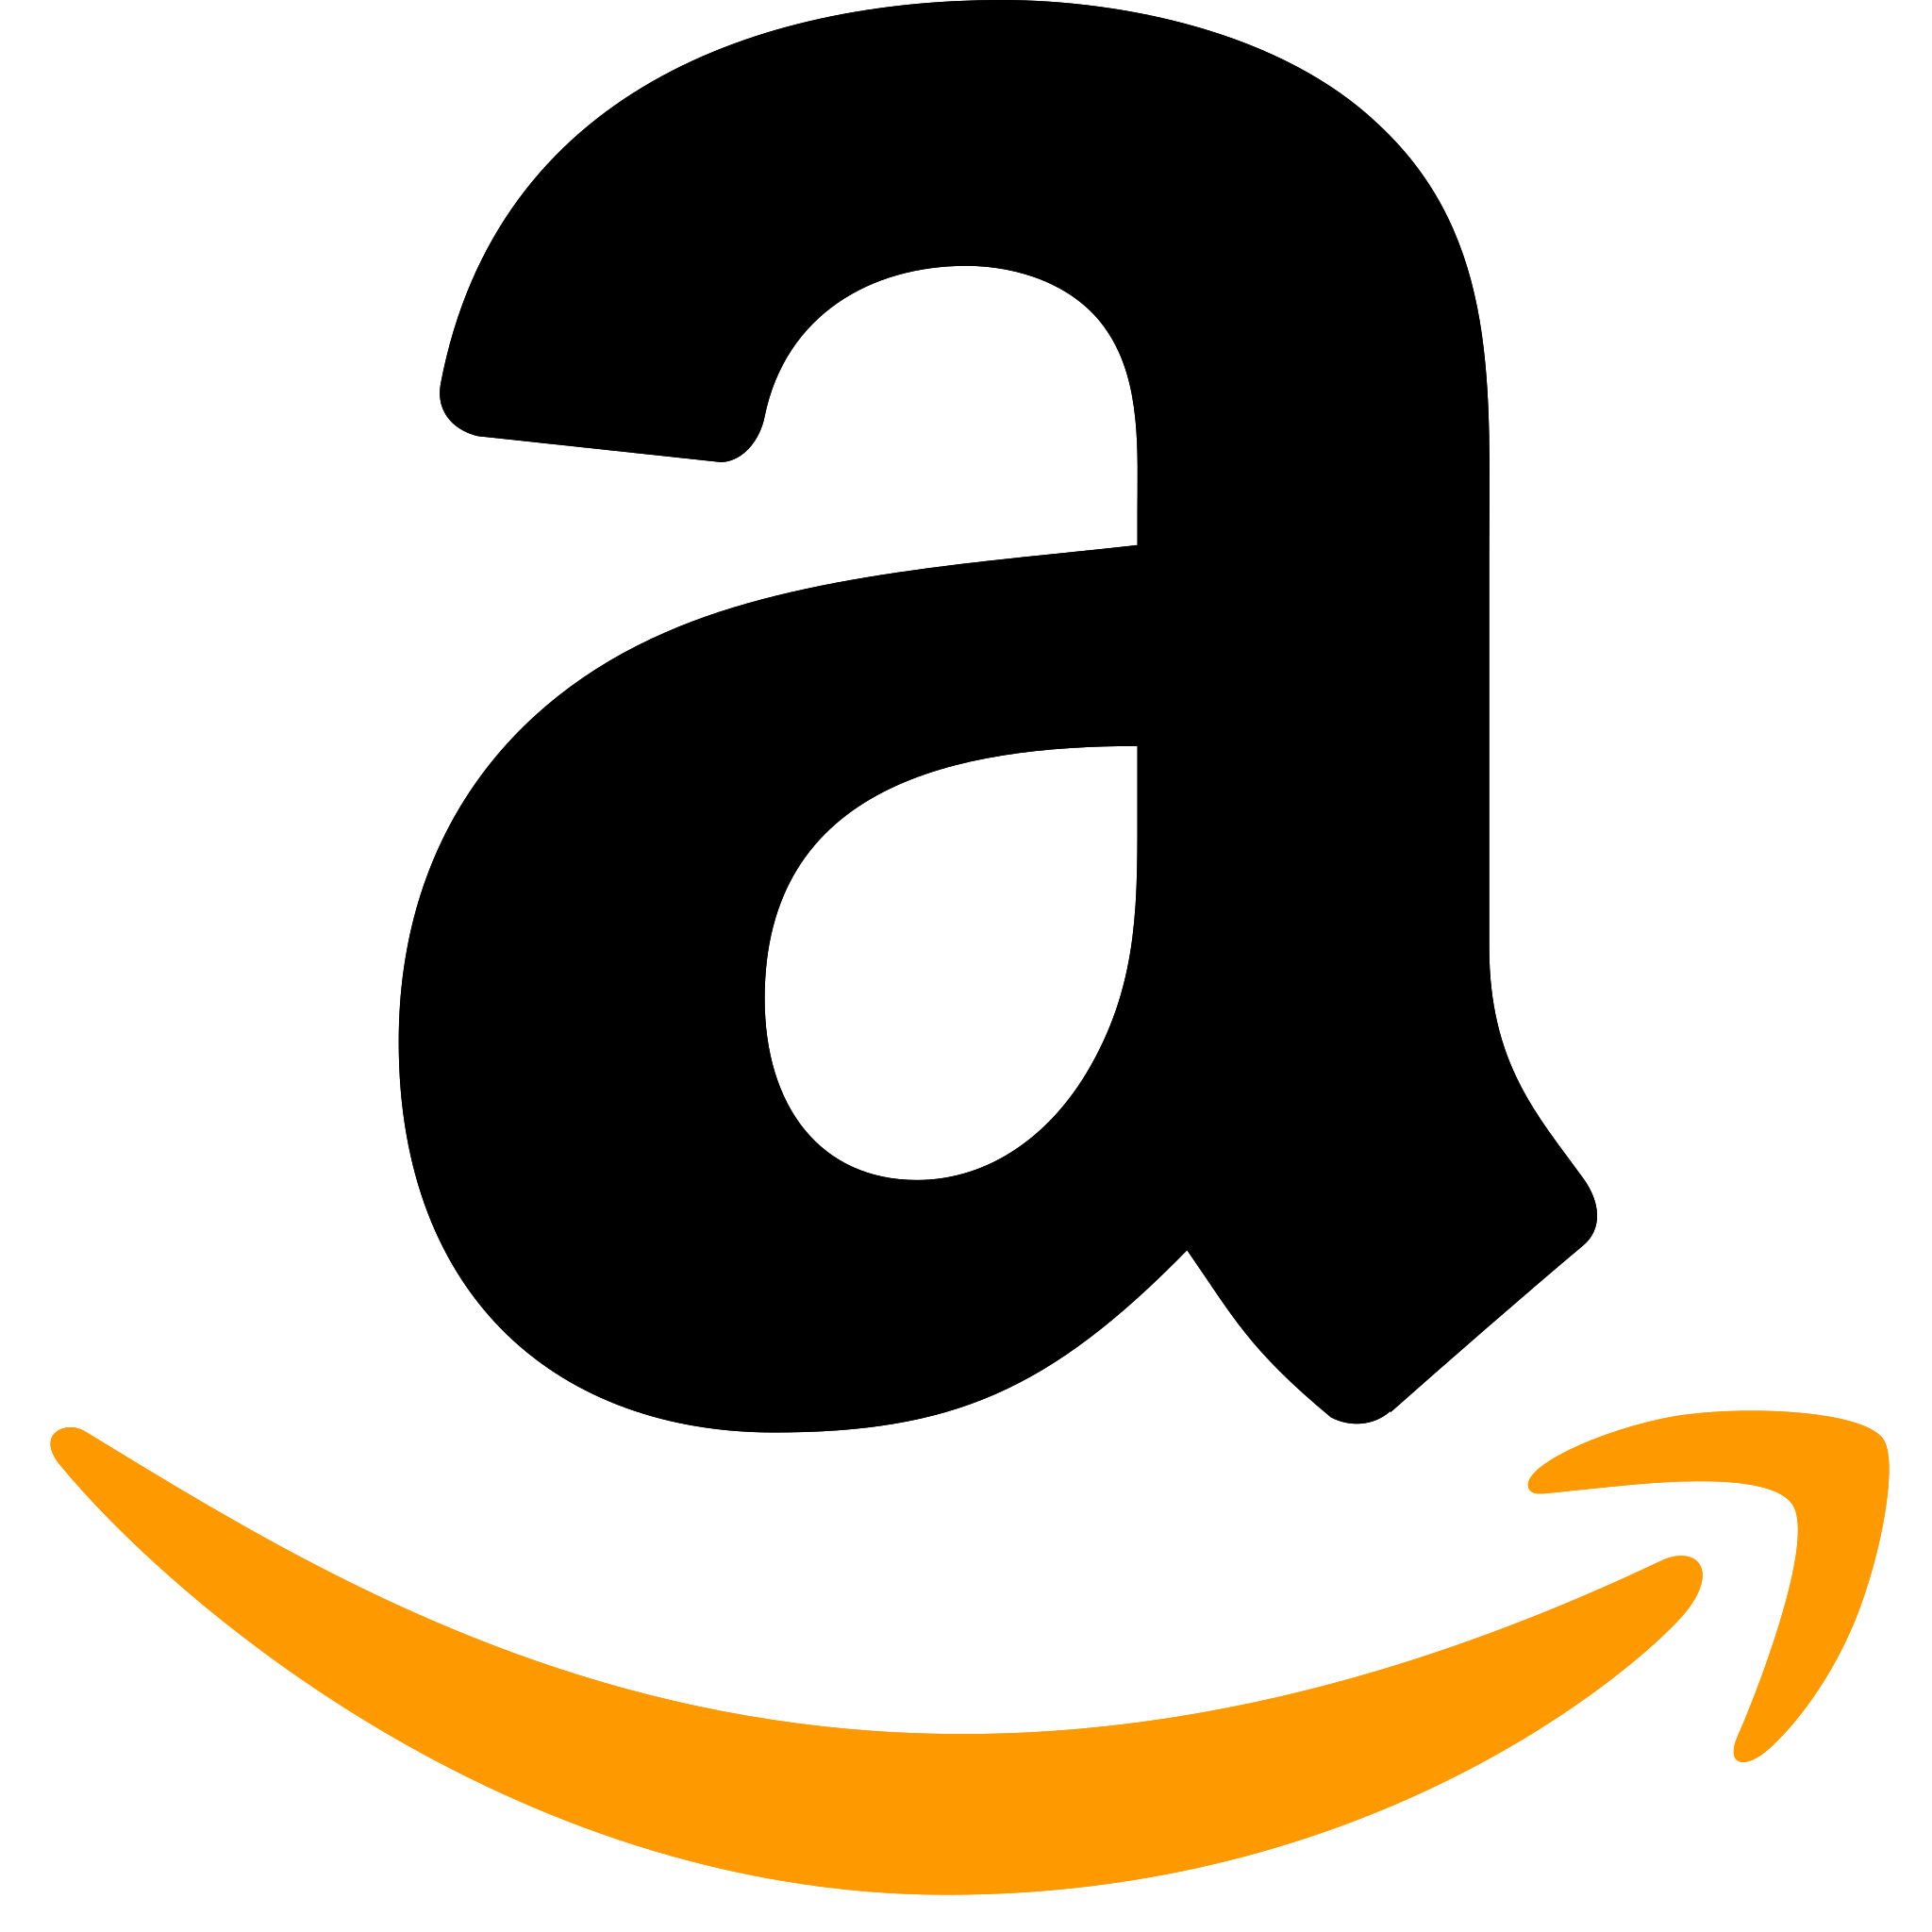 Amazon Author Page